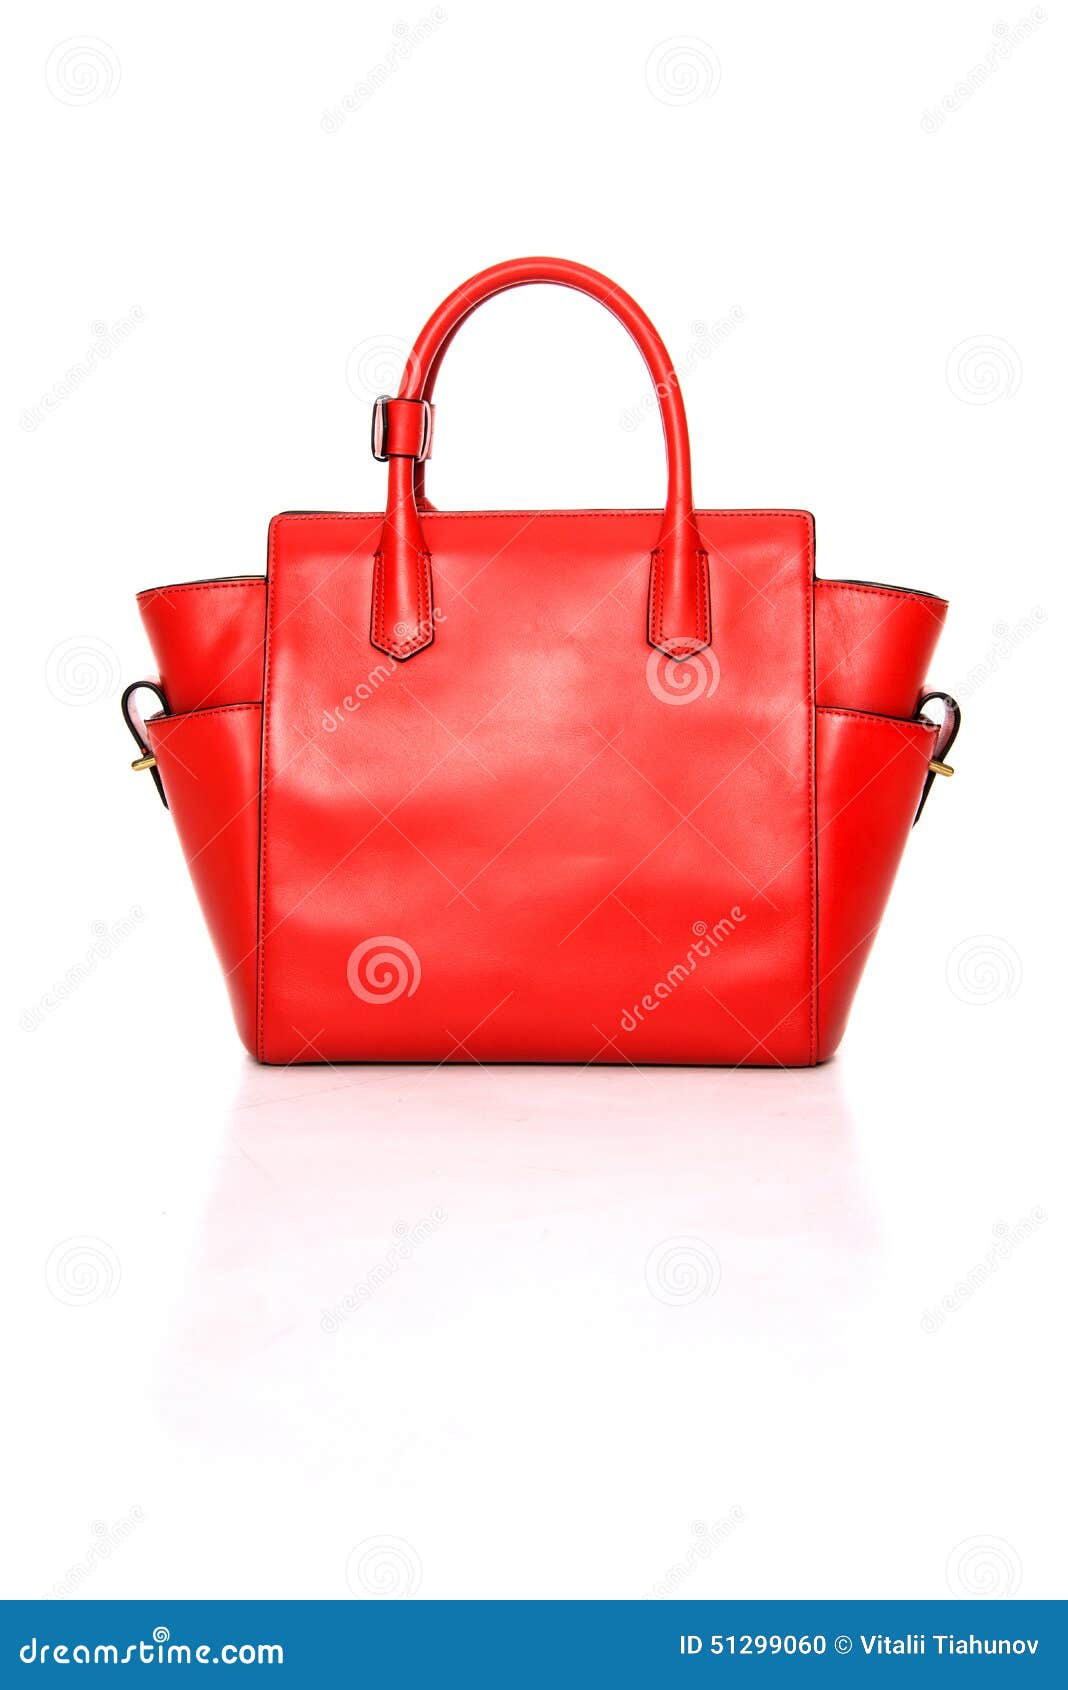 Red Leather Ladies handbag stock photo. Image of stylish - 51299060